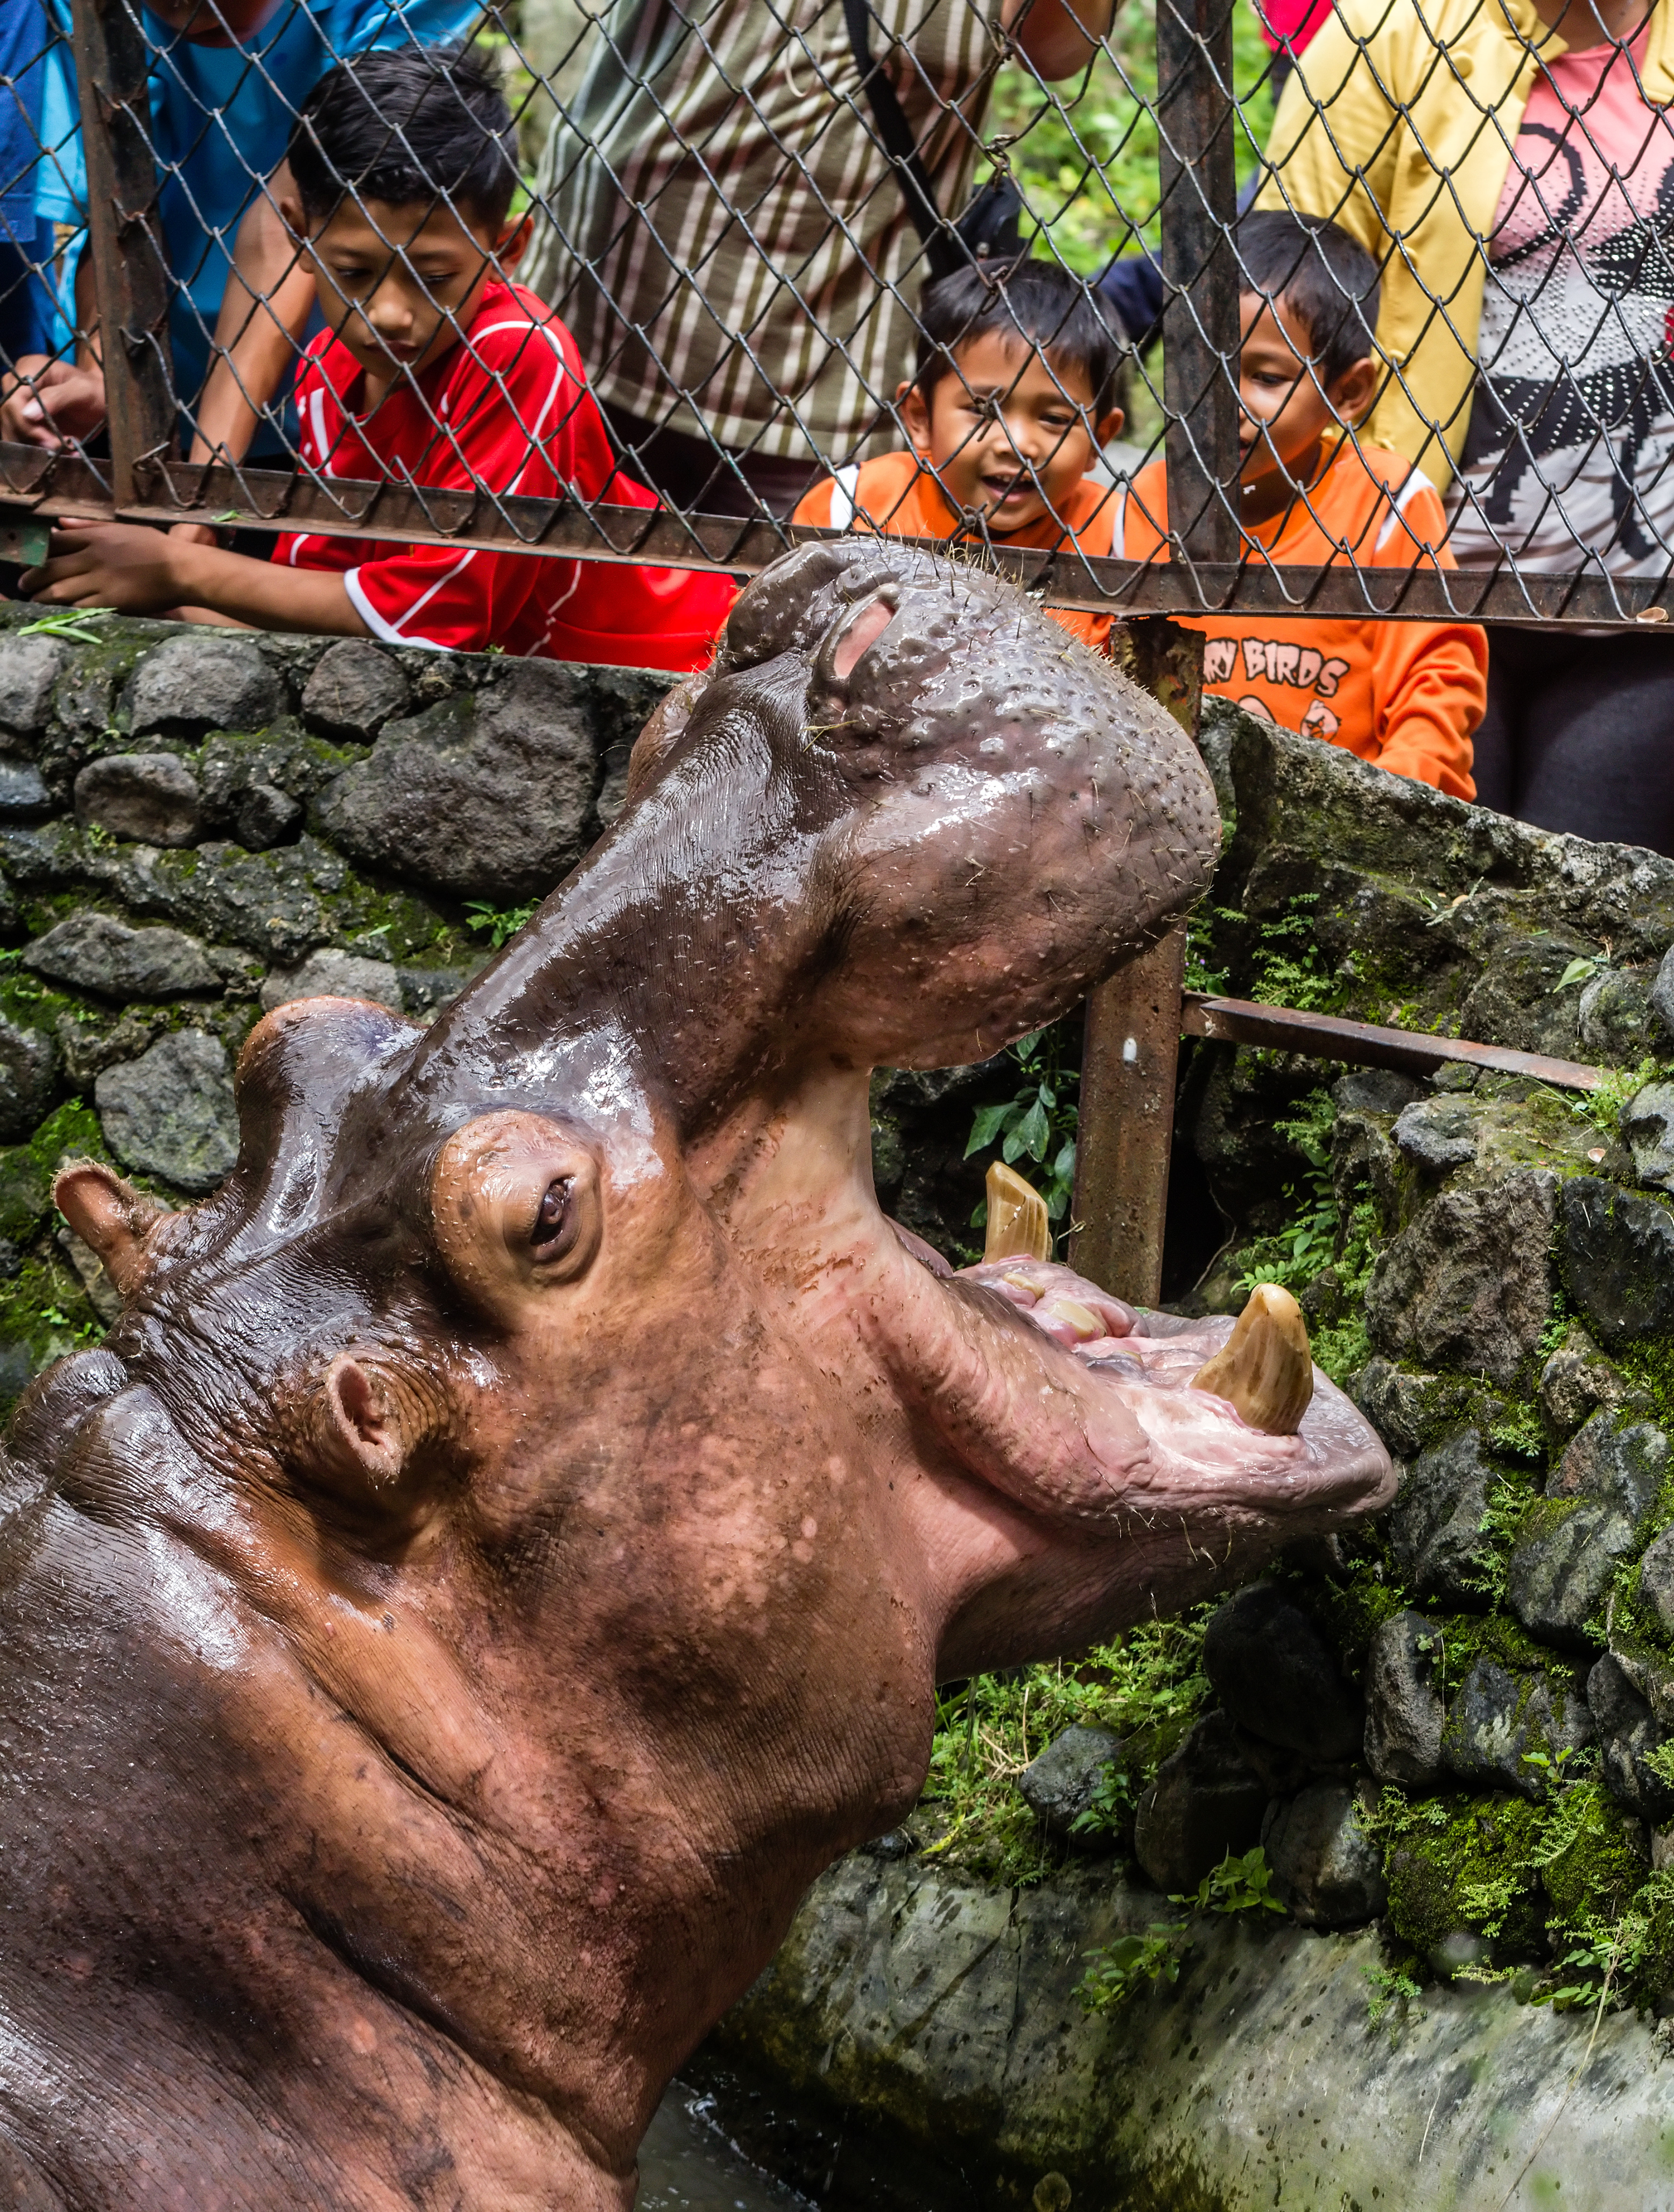 African hippopotamus greeting guests, Gembira Loka Zoo, Yogyakarta, 2015-03-15 01